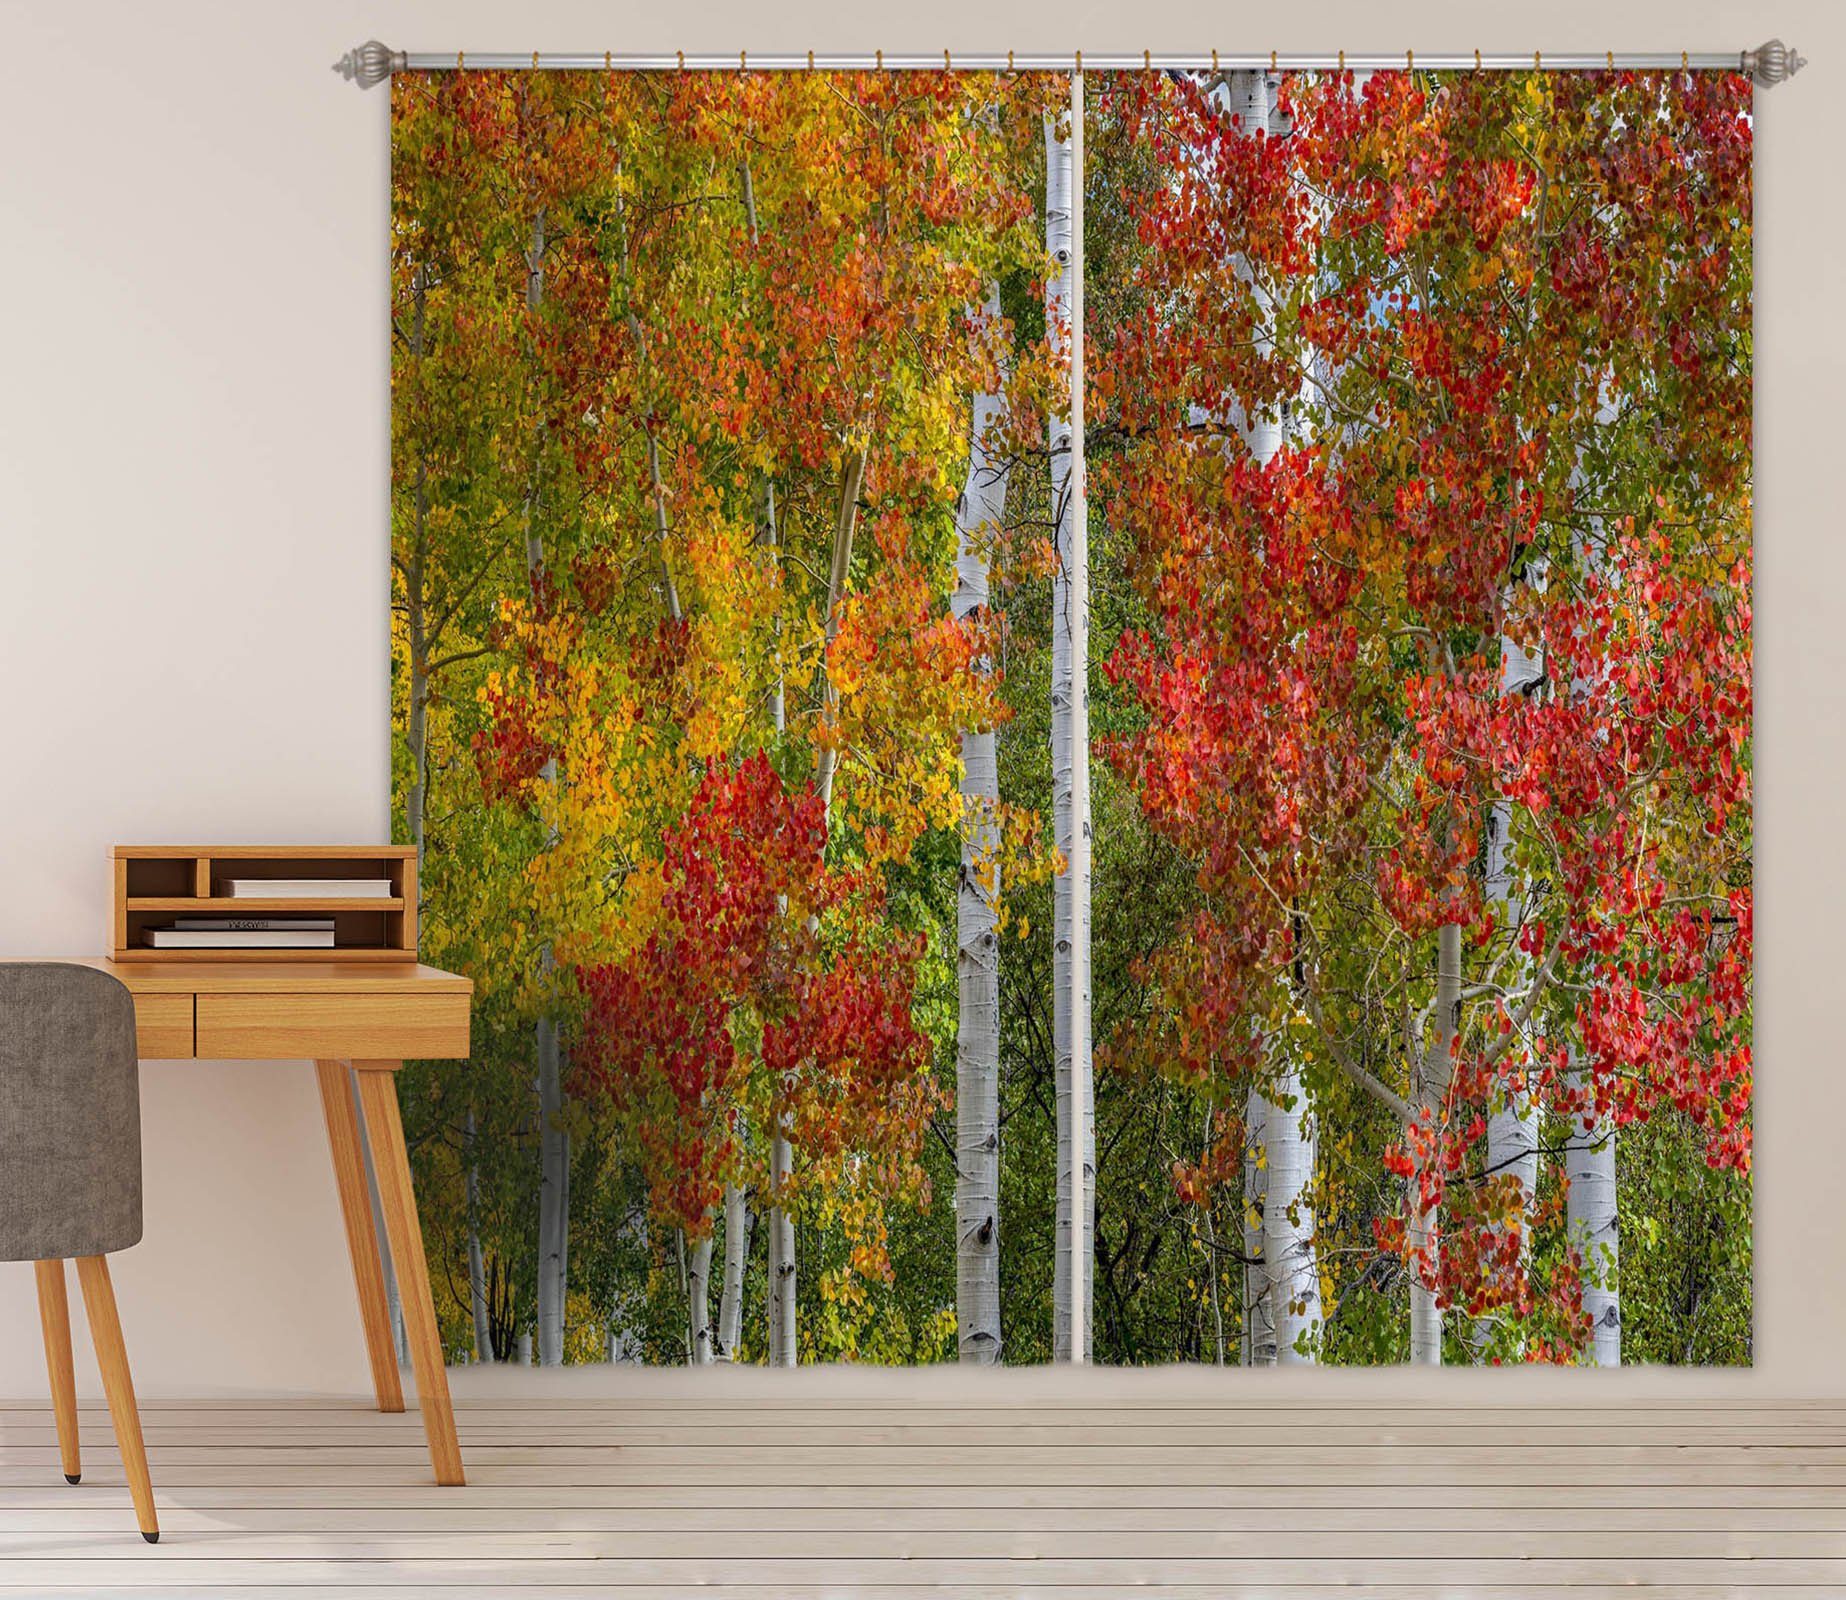 3D Autumn Leaves 062 Marco Carmassi Curtain Curtains Drapes Curtains AJ Creativity Home 